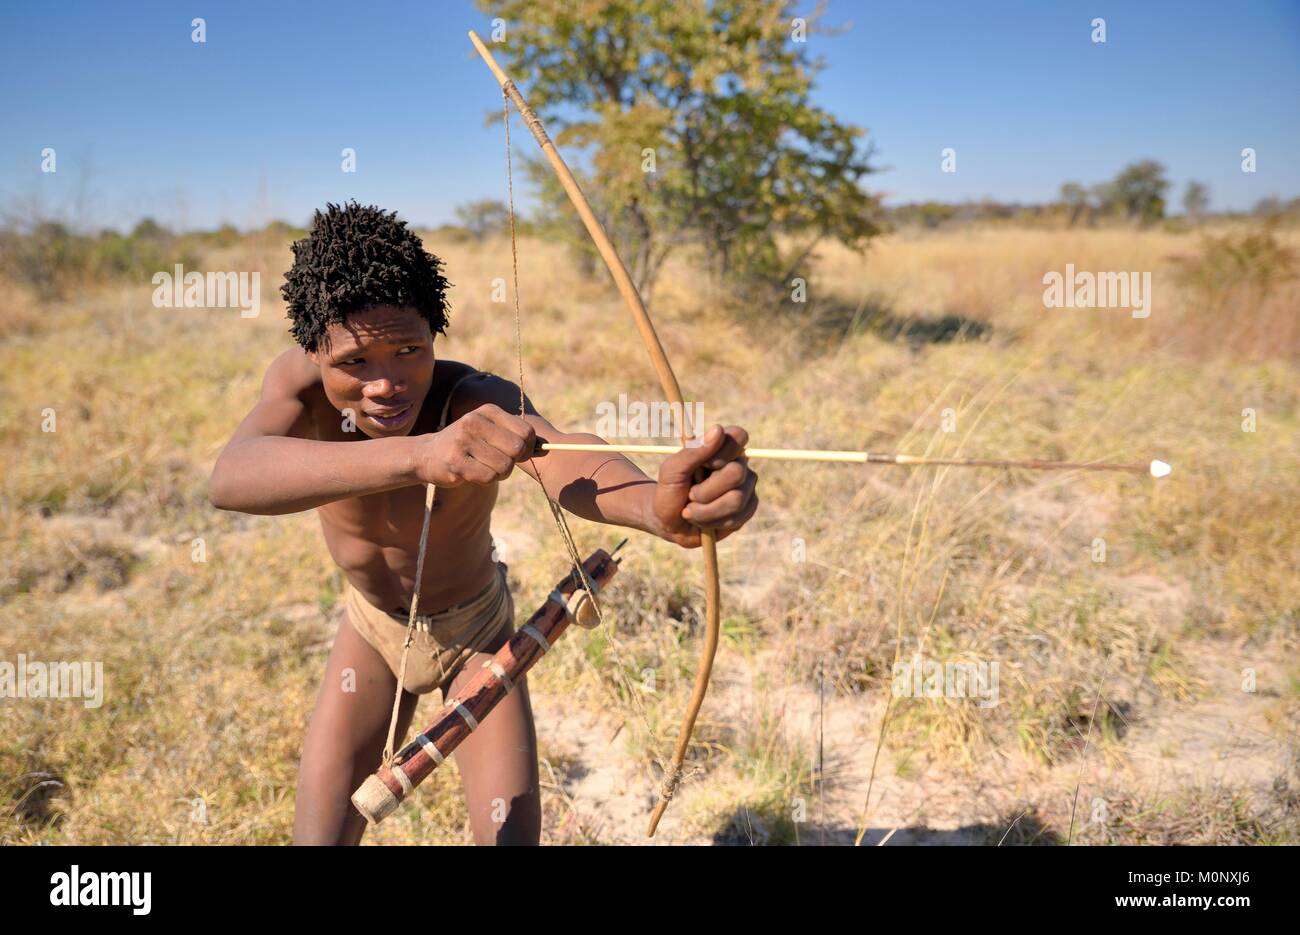 Bushman du Ju/" Hoansi-San avec arc et flèche à la chasse,village //Xa/oba,près de Tsumkwe Otjozondjupa,région,Namibie Banque D'Images